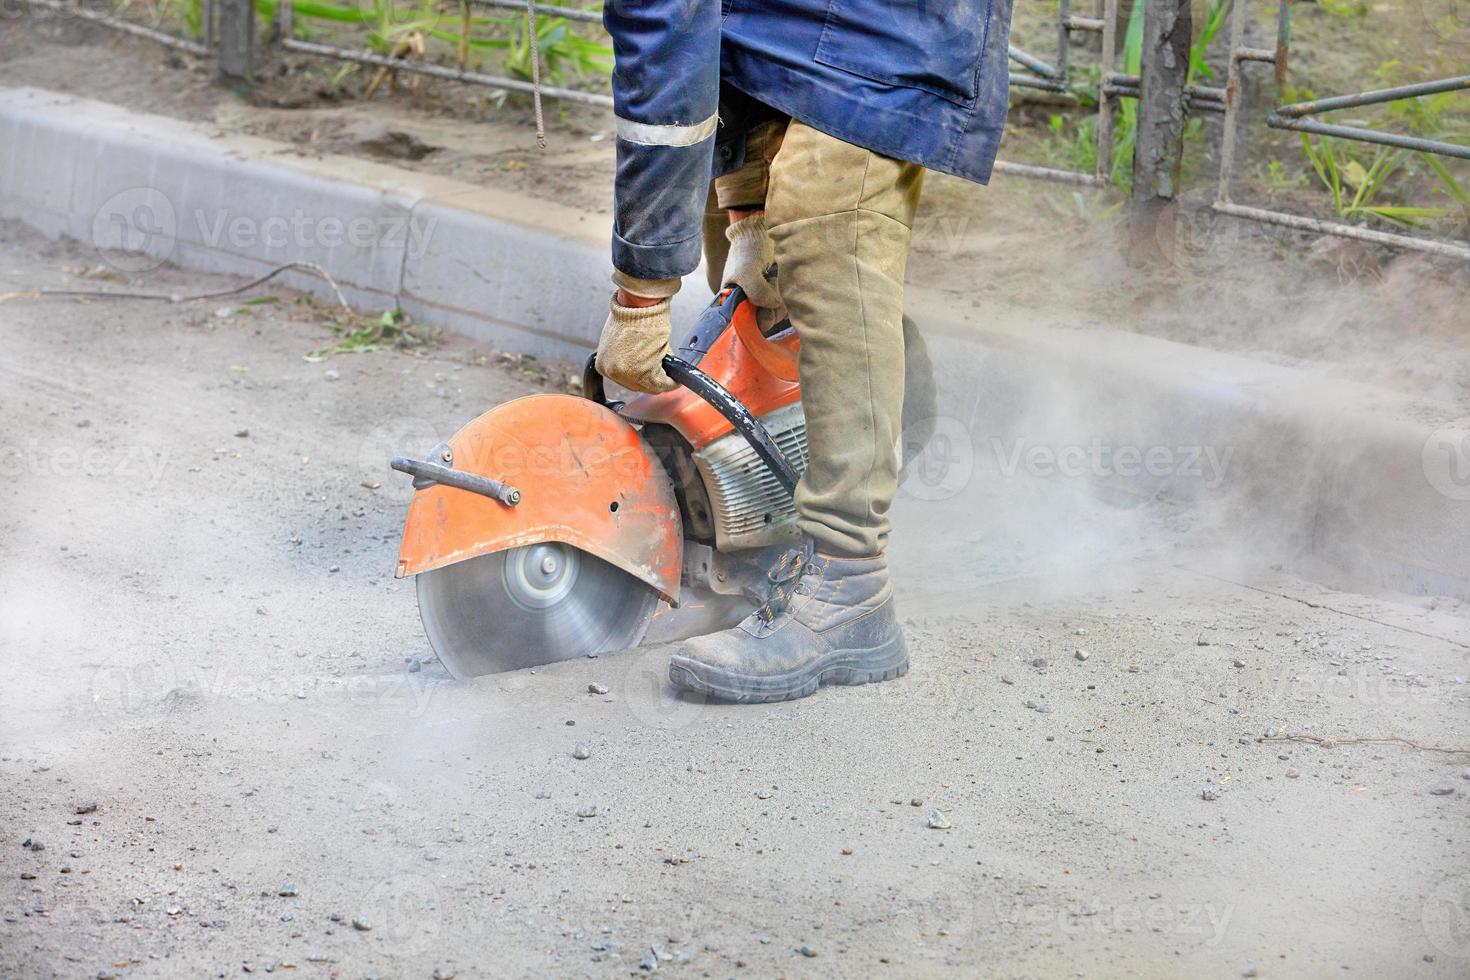 un ouvrier du bâtiment à l'aide d'une scie à essence portable coupe du vieil asphalte pour réparer un site sur la route. photo